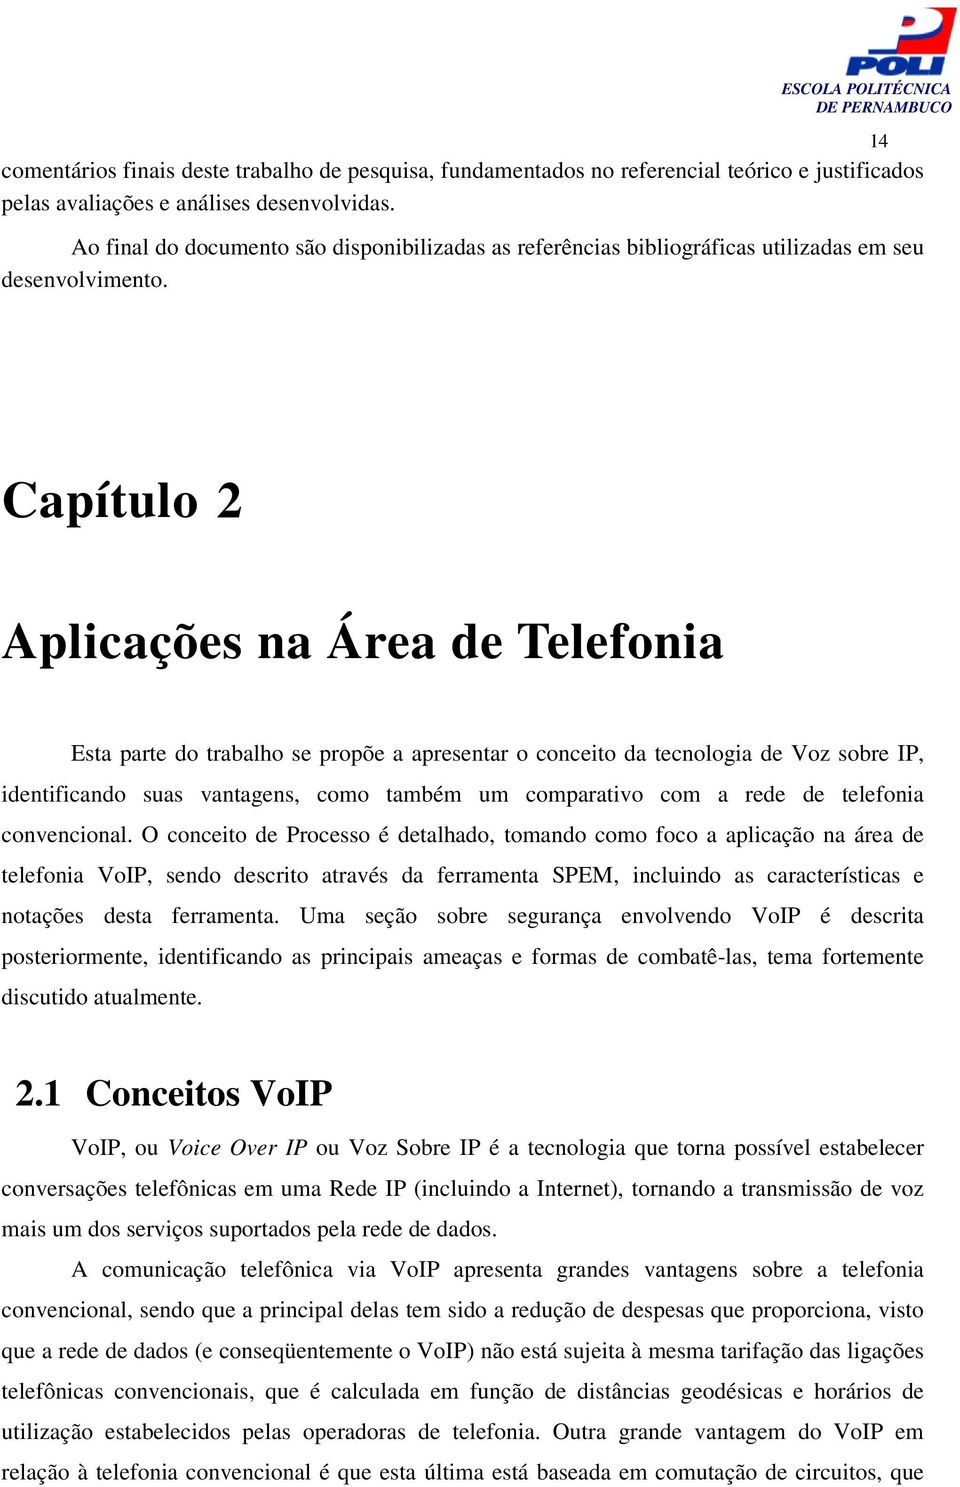 14 Capítulo 2 Aplicações na Área de Telefonia Esta parte do trabalho se propõe a apresentar o conceito da tecnologia de Voz sobre IP, identificando suas vantagens, como também um comparativo com a